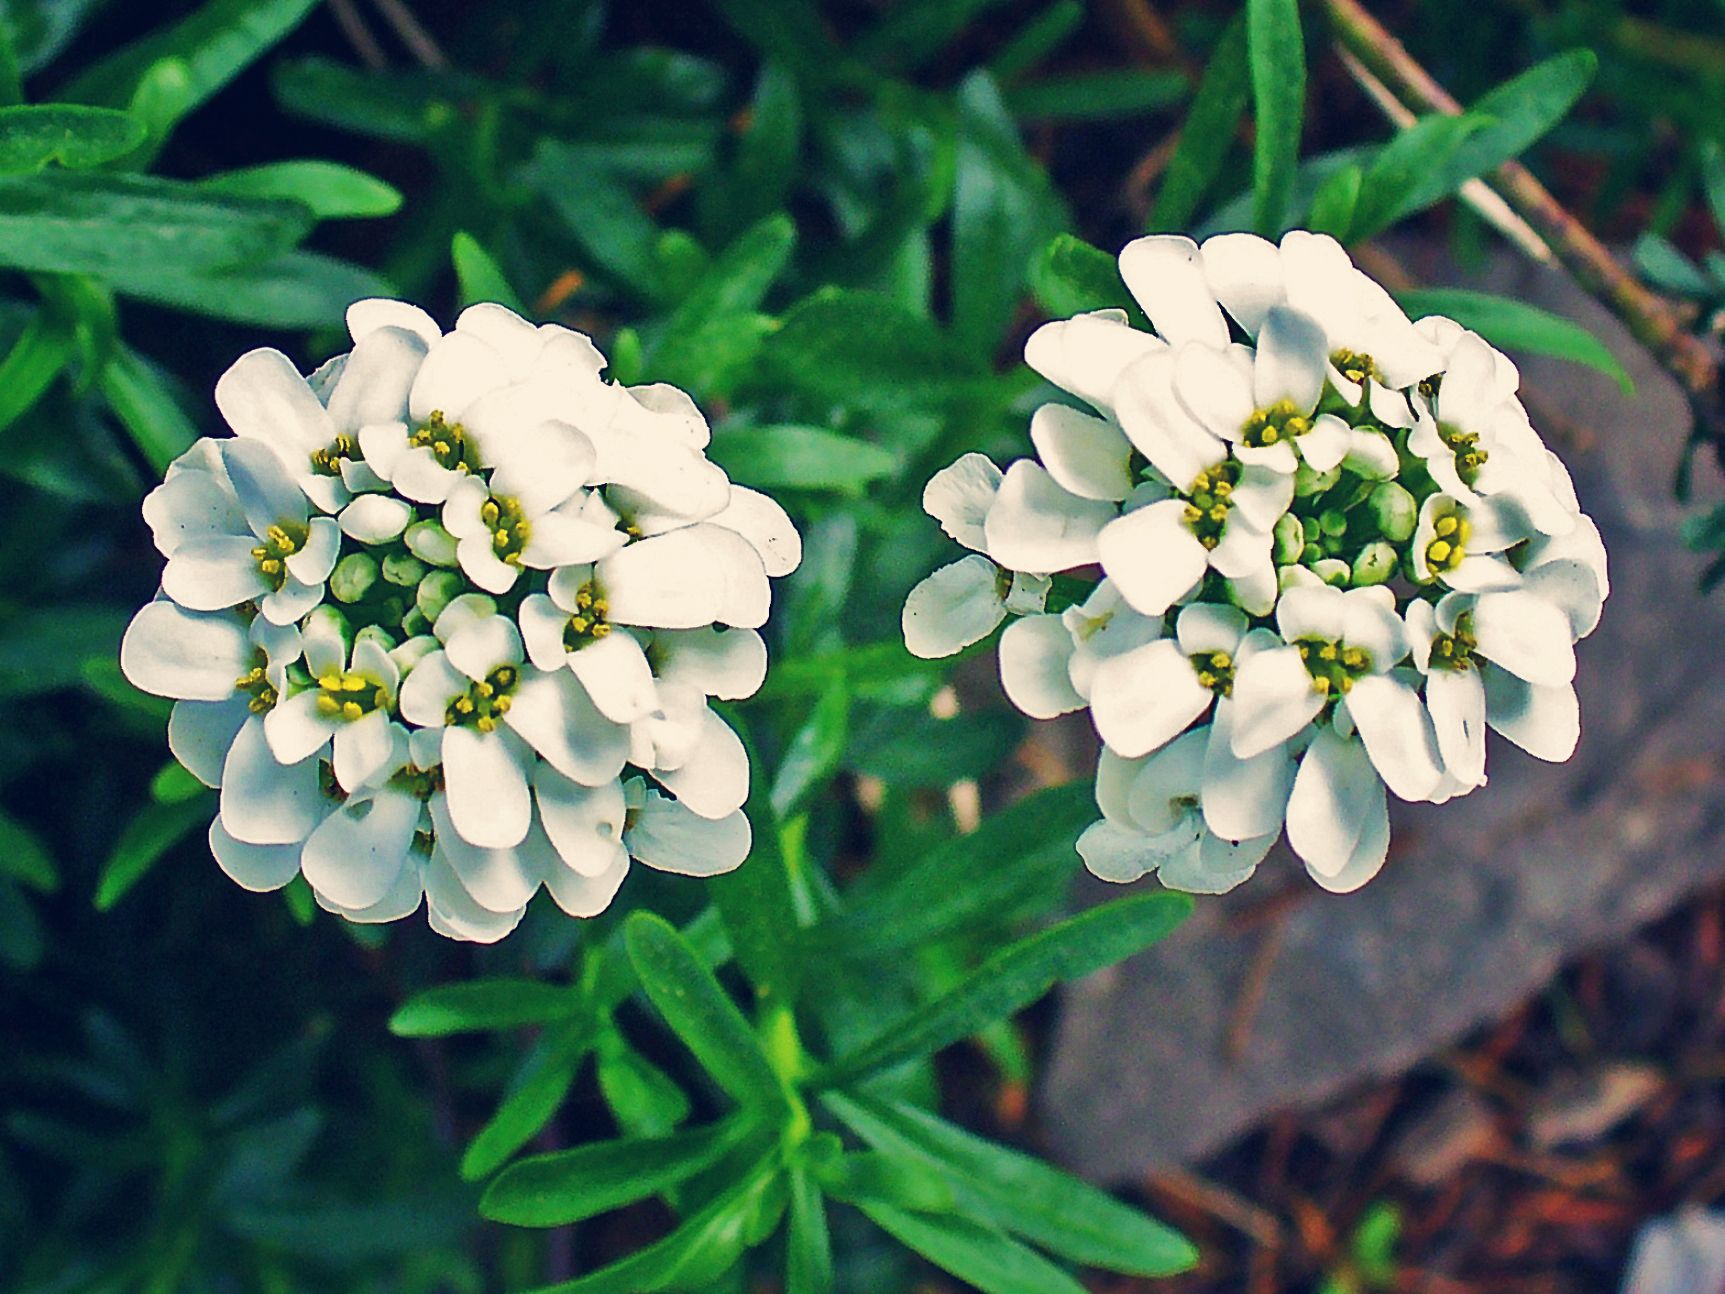 Tổng hợp hình ảnh hoa bụi đường đẹp nhất – Mang ý nghĩa về “sự thờ ơ, lạnh lùng”. - [Kích thước hình ảnh: 1725x1294 px]